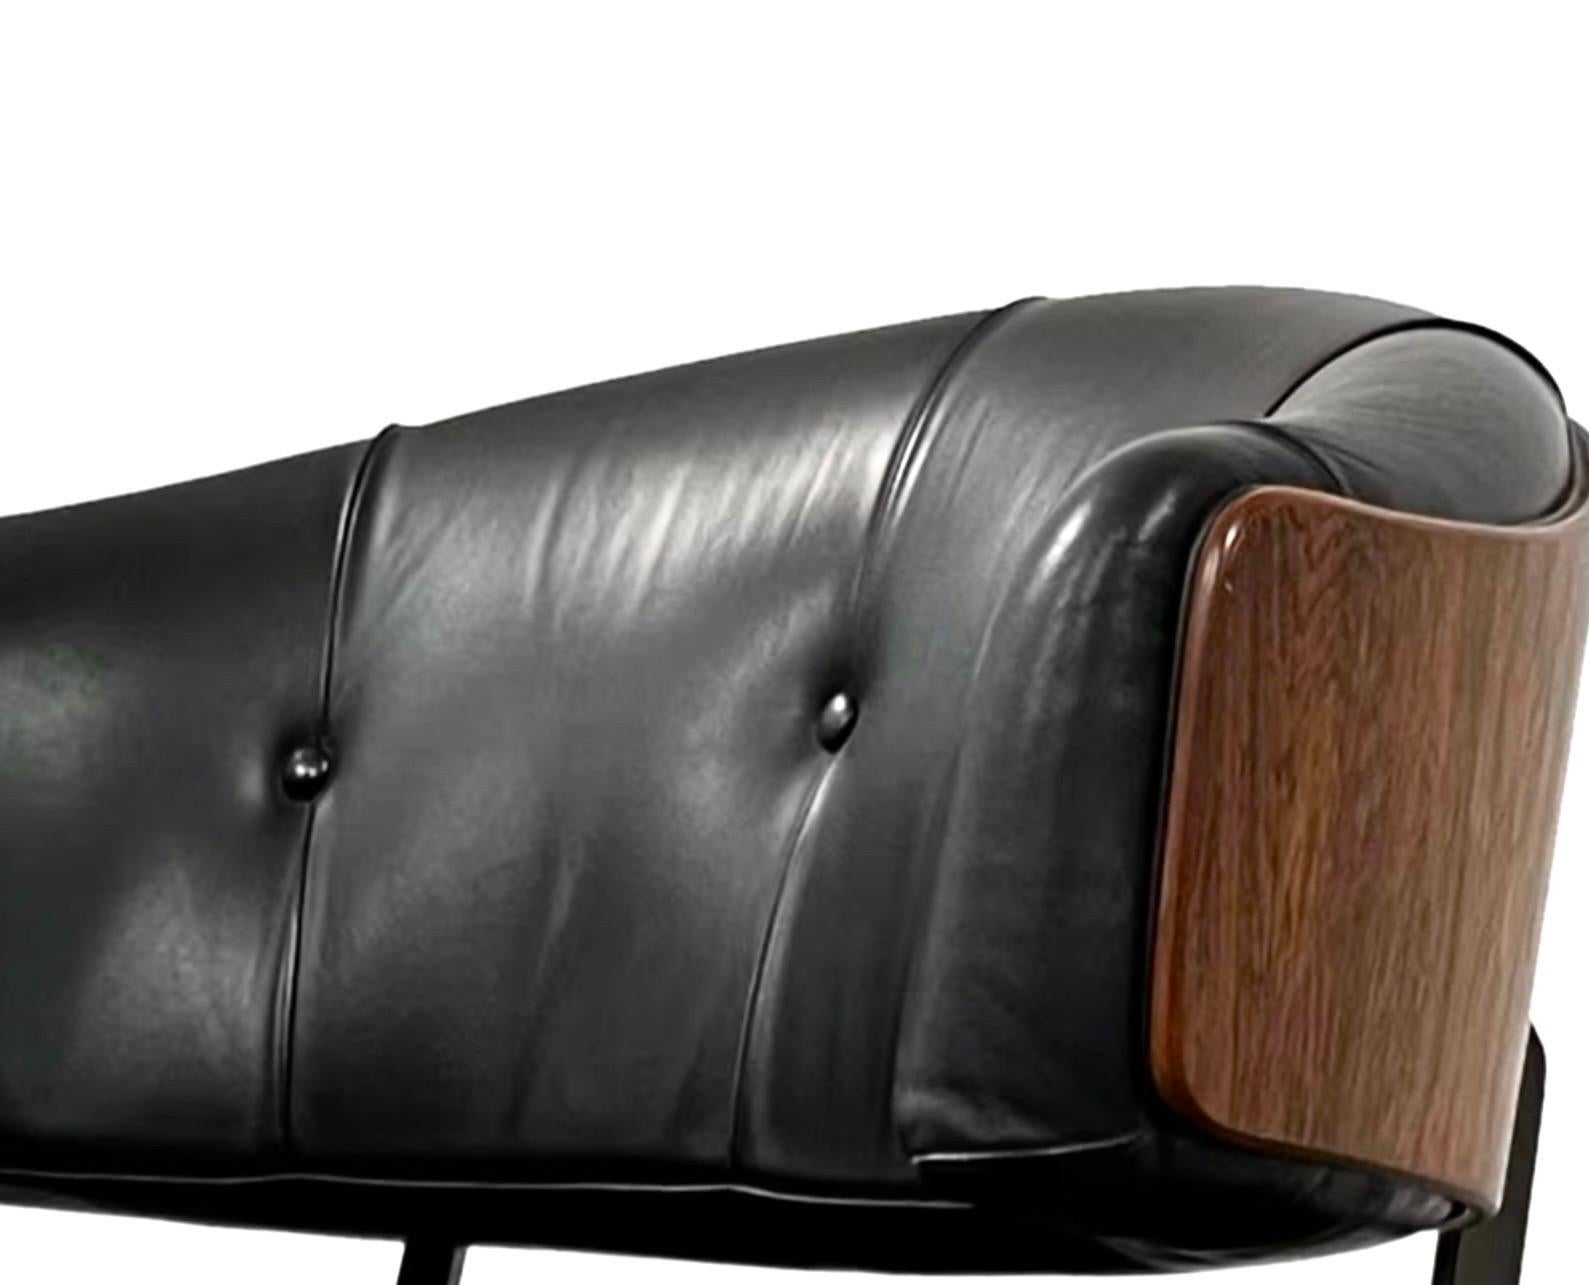 Gieger Loungesessel und Ottomane, Rosenholz und schwarzes Leder, Arflex Italia, 1960er Jahre

Die Schale besteht aus drei Palisanderelementen, die durch ein fantastisches schwarzes Stahlgelenk verbunden sind.  Die Schale steht auf einem